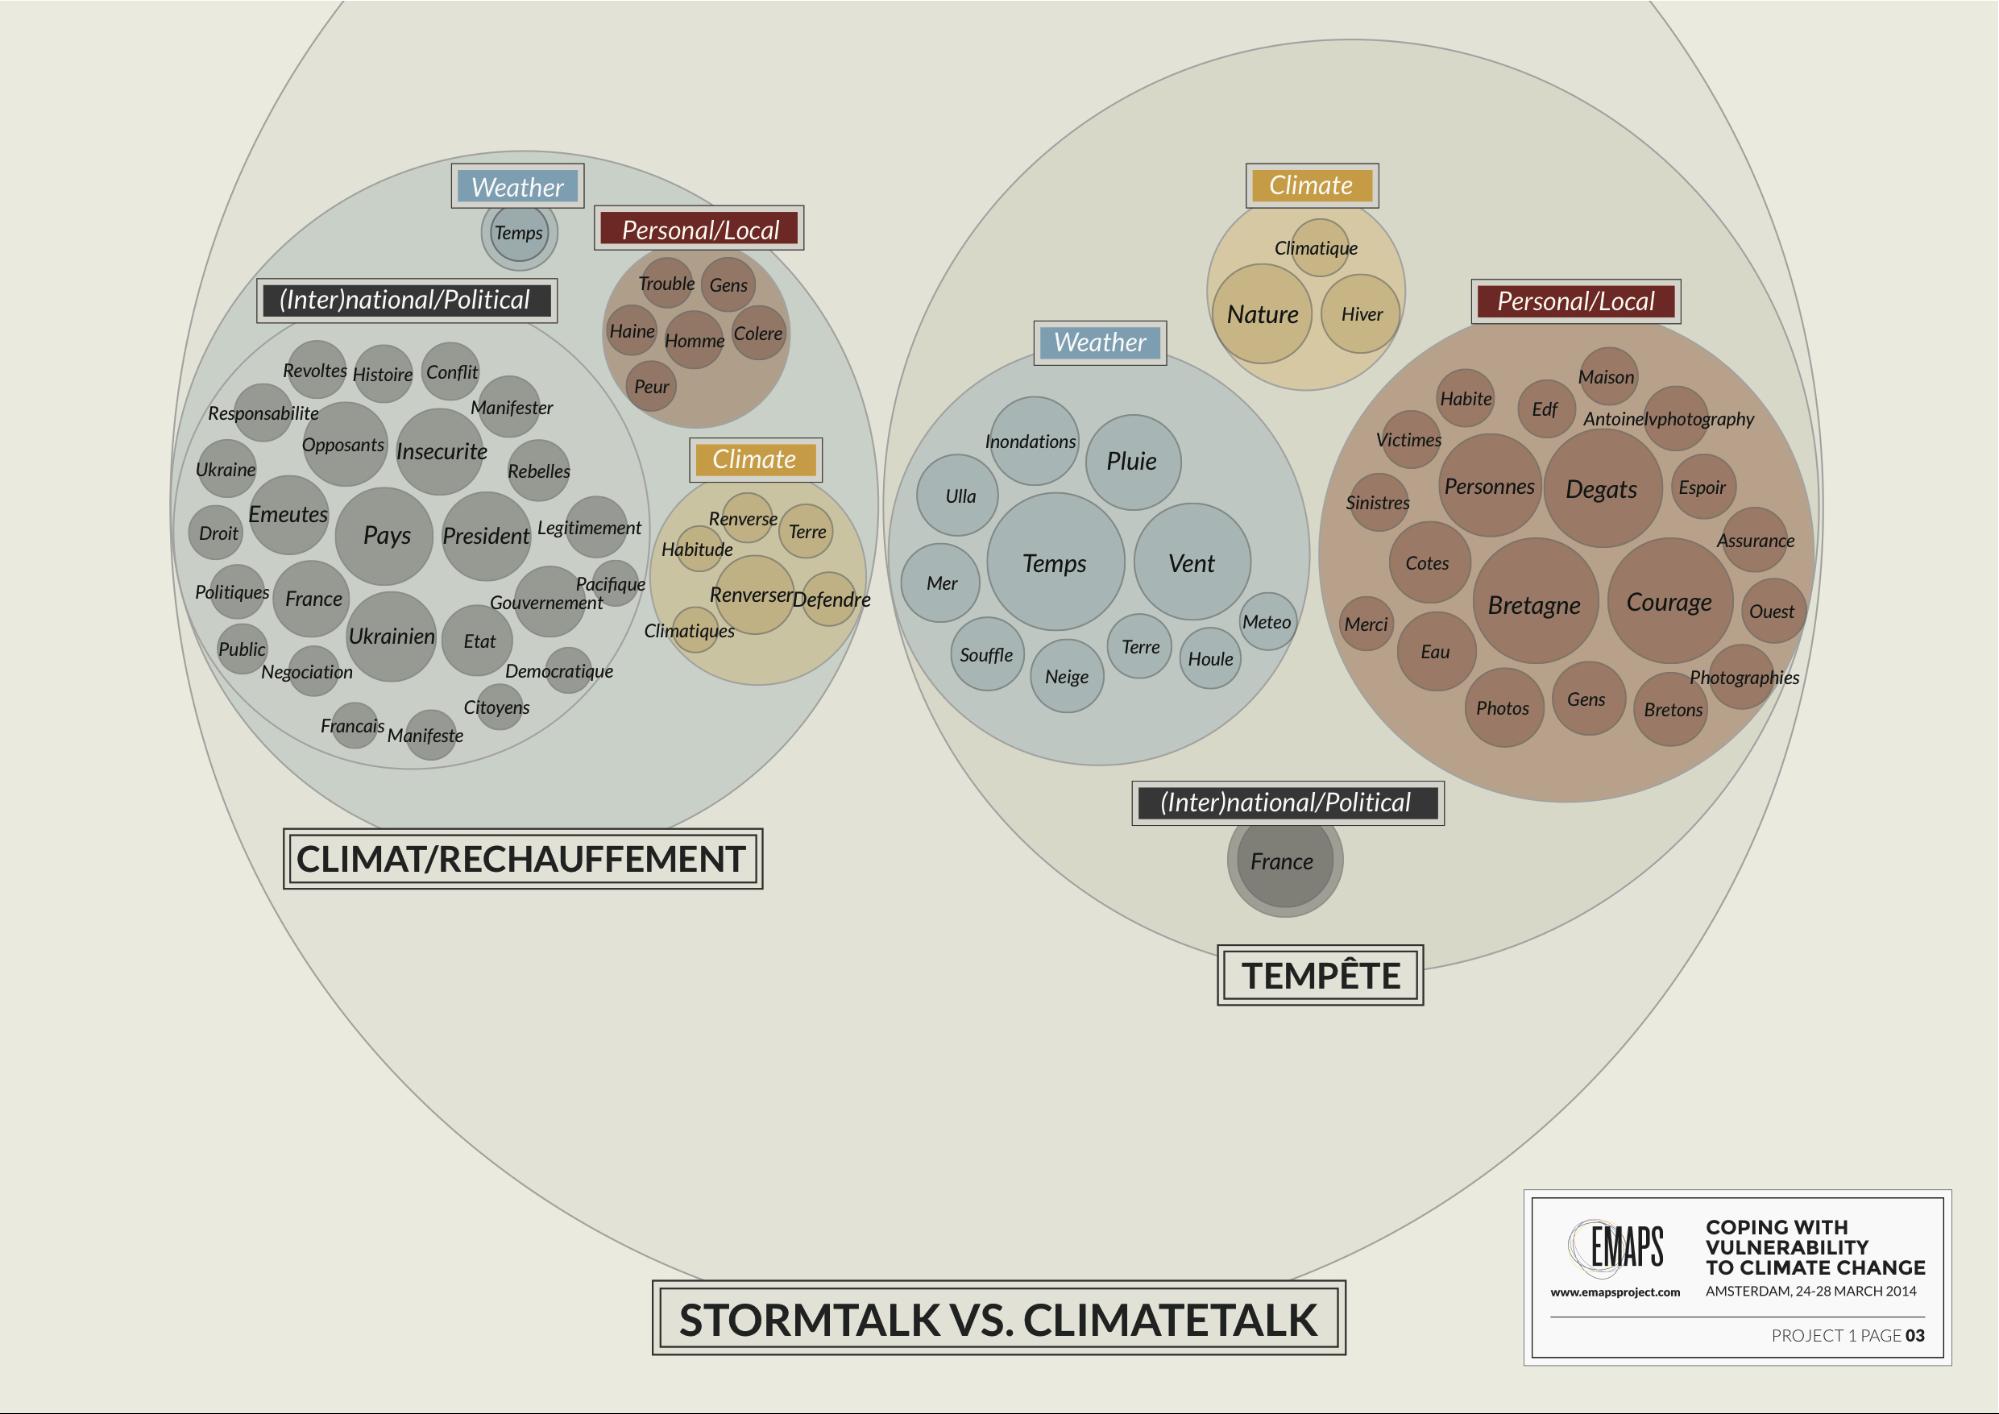 stormtalk vs climatetalk_def.jpg